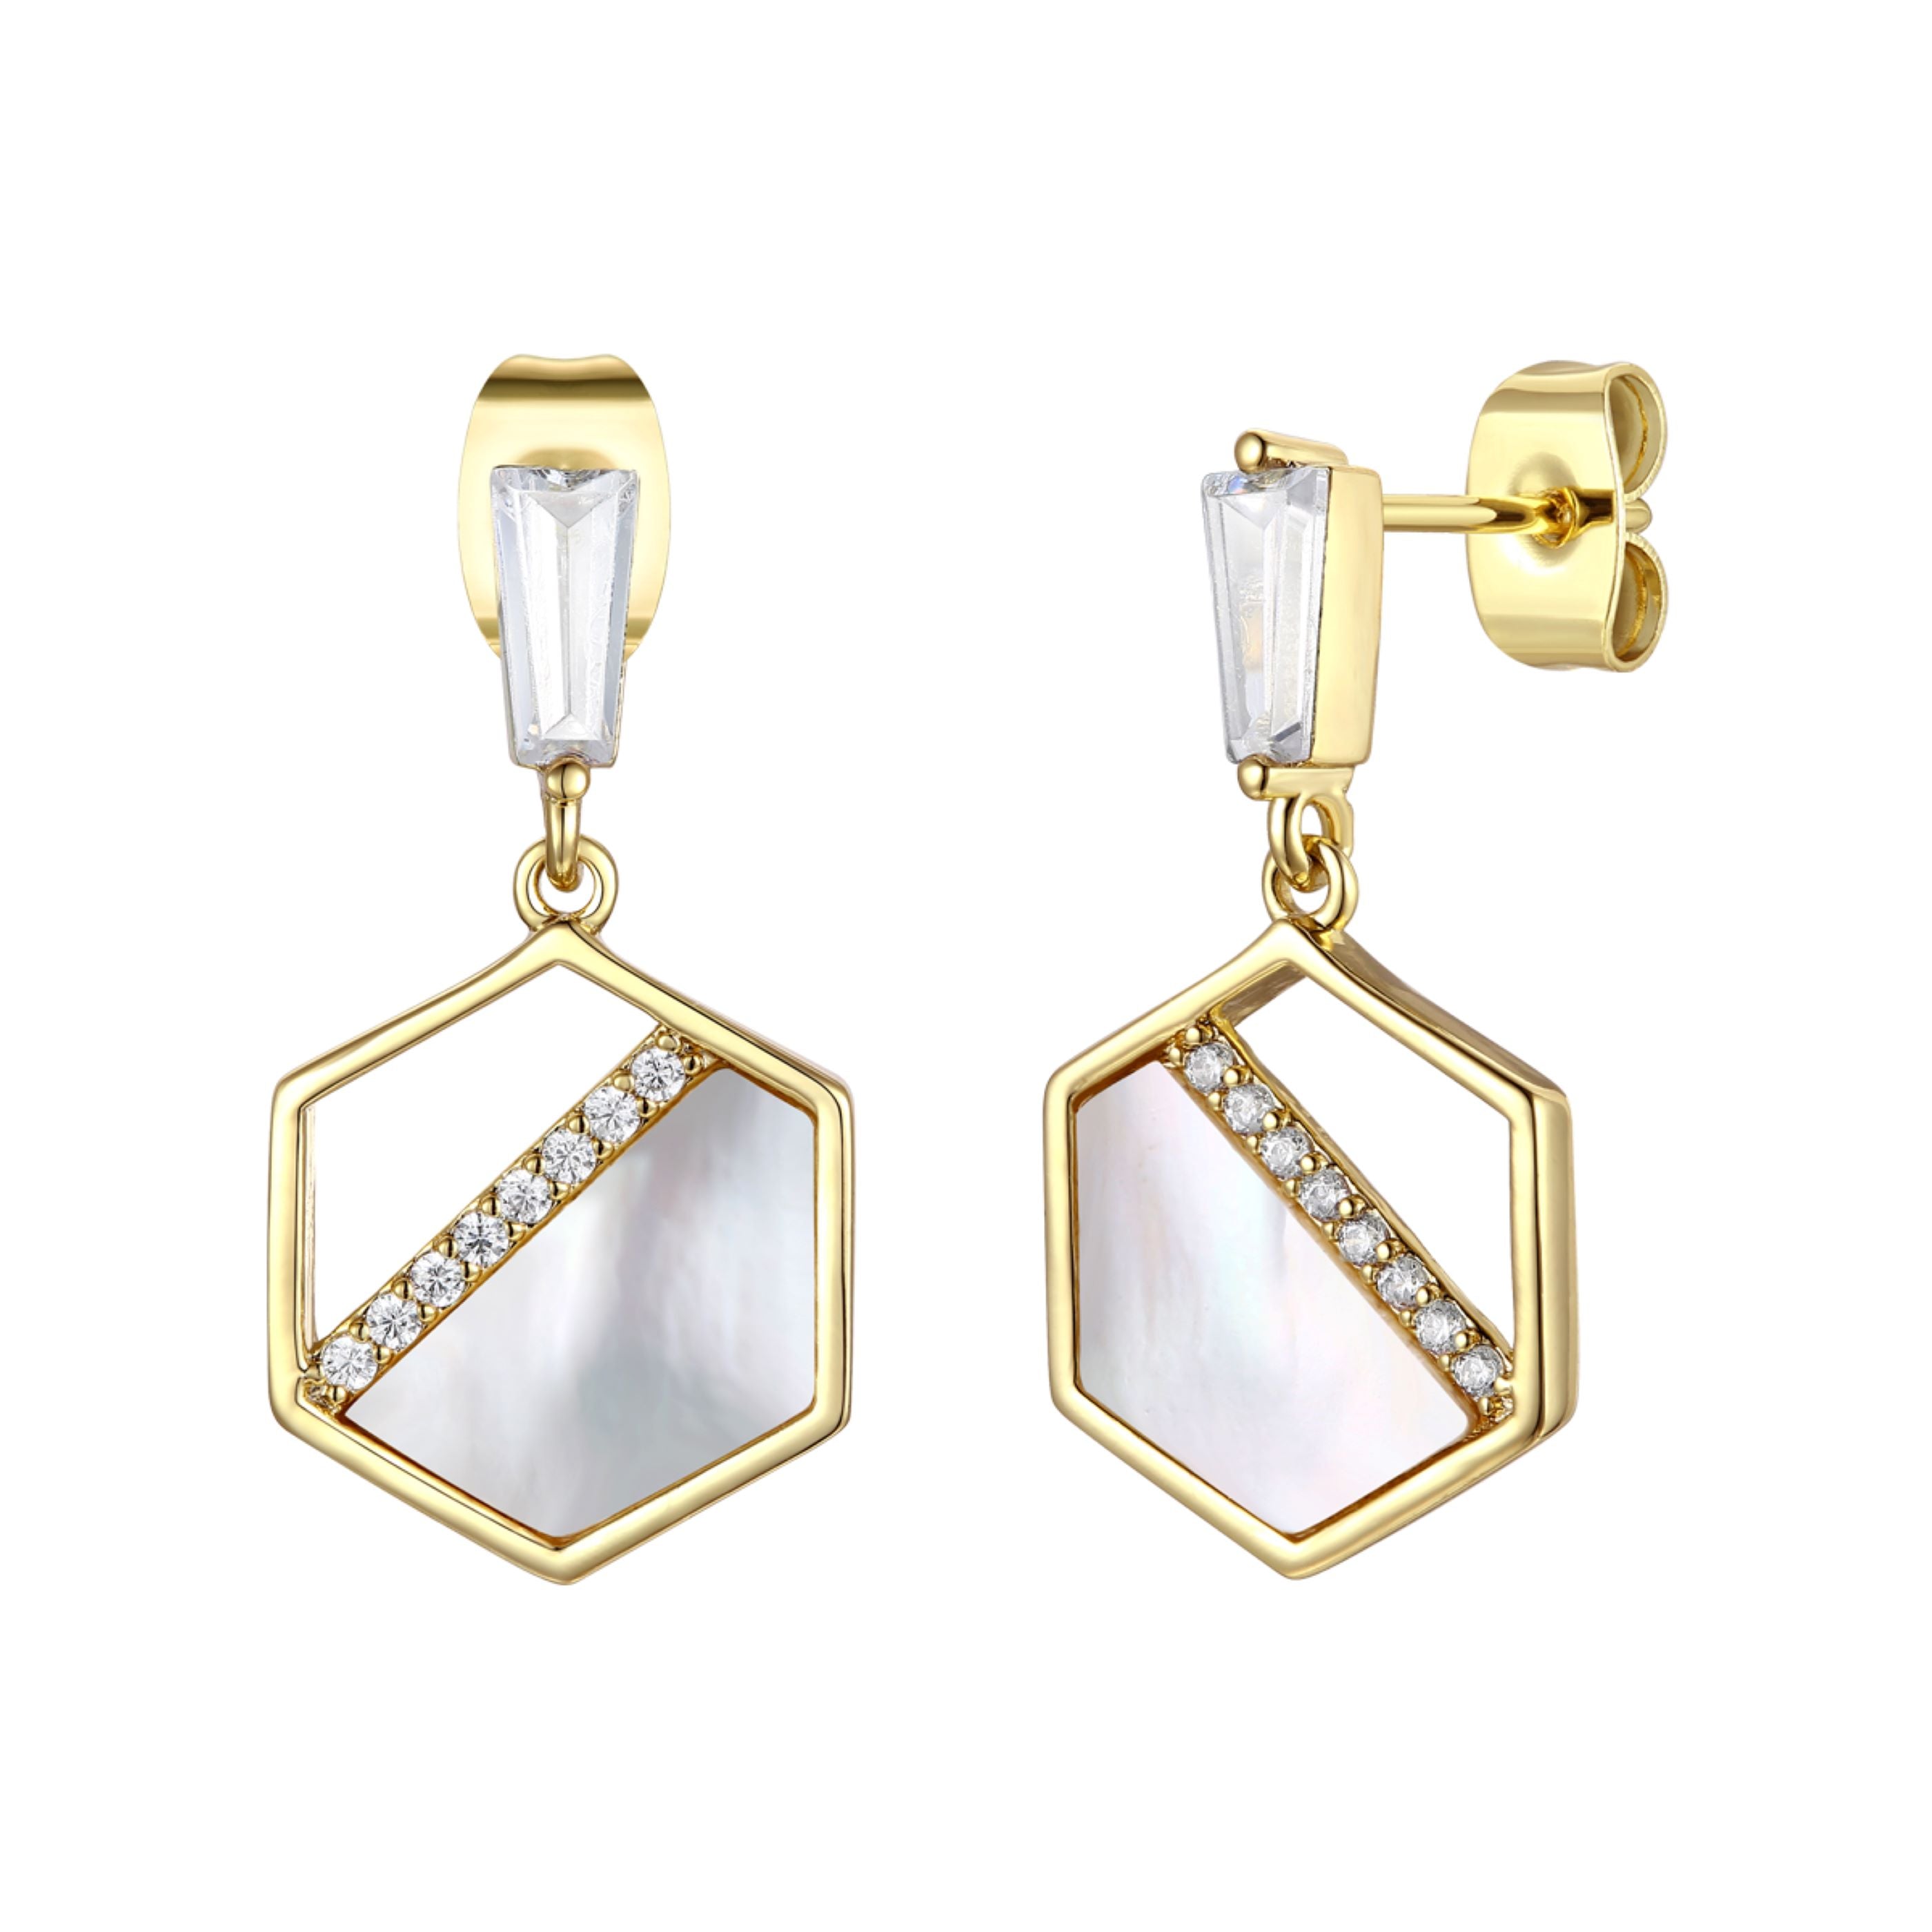 earrings women jewelry type gold plated